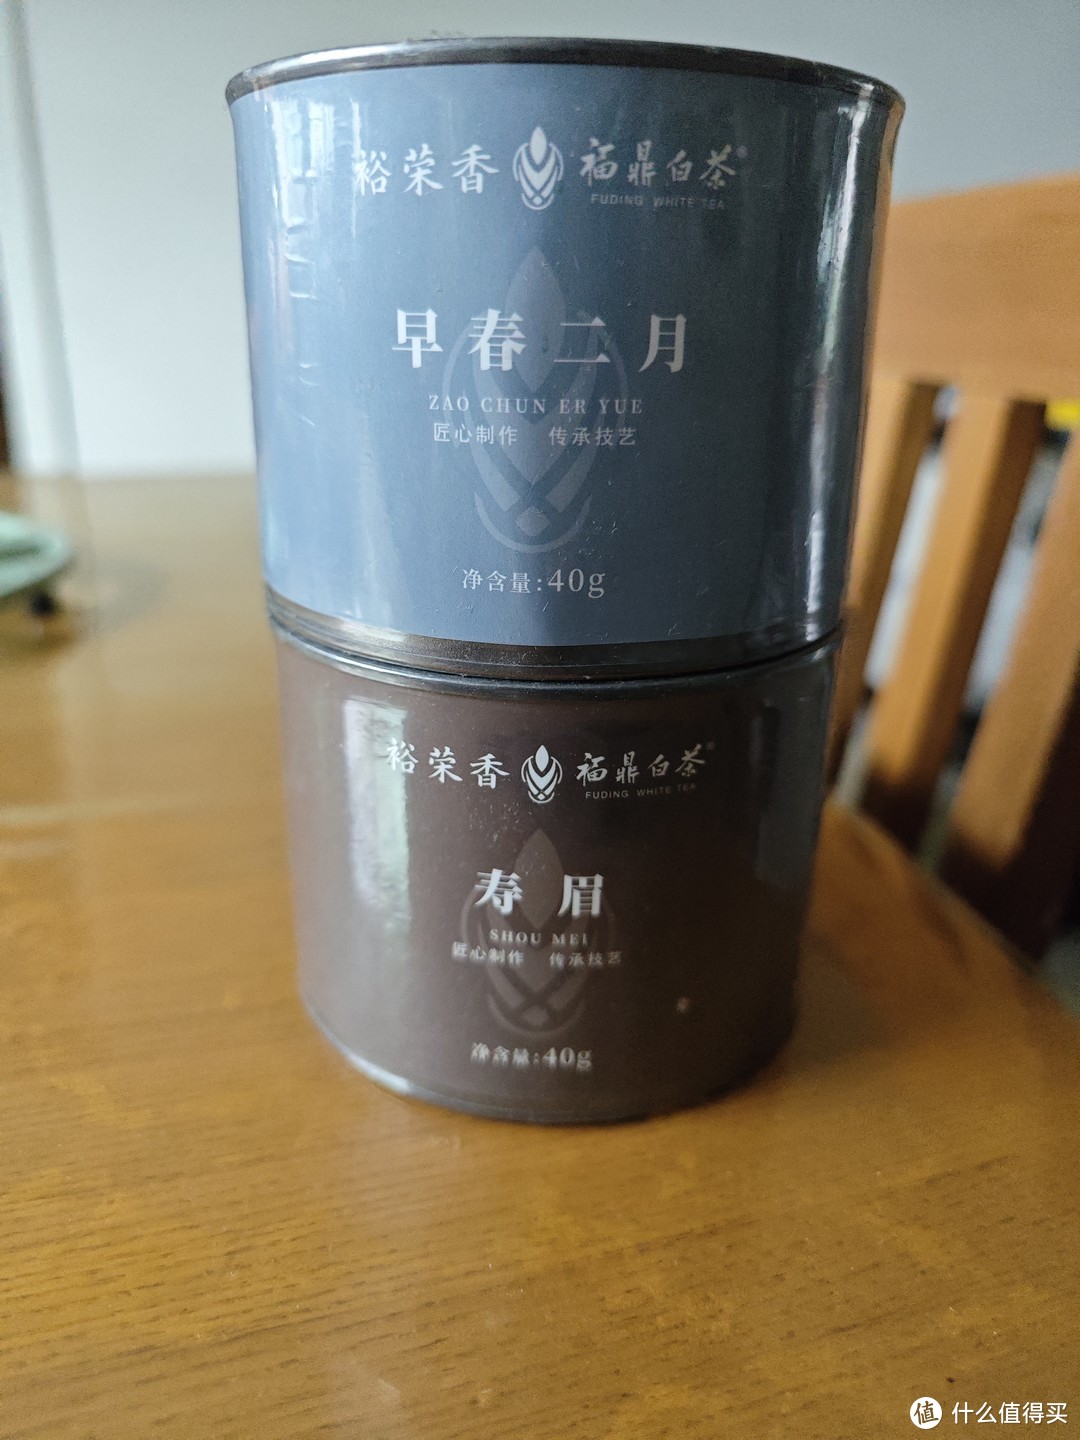 这个是蔡先生自己品牌的茶